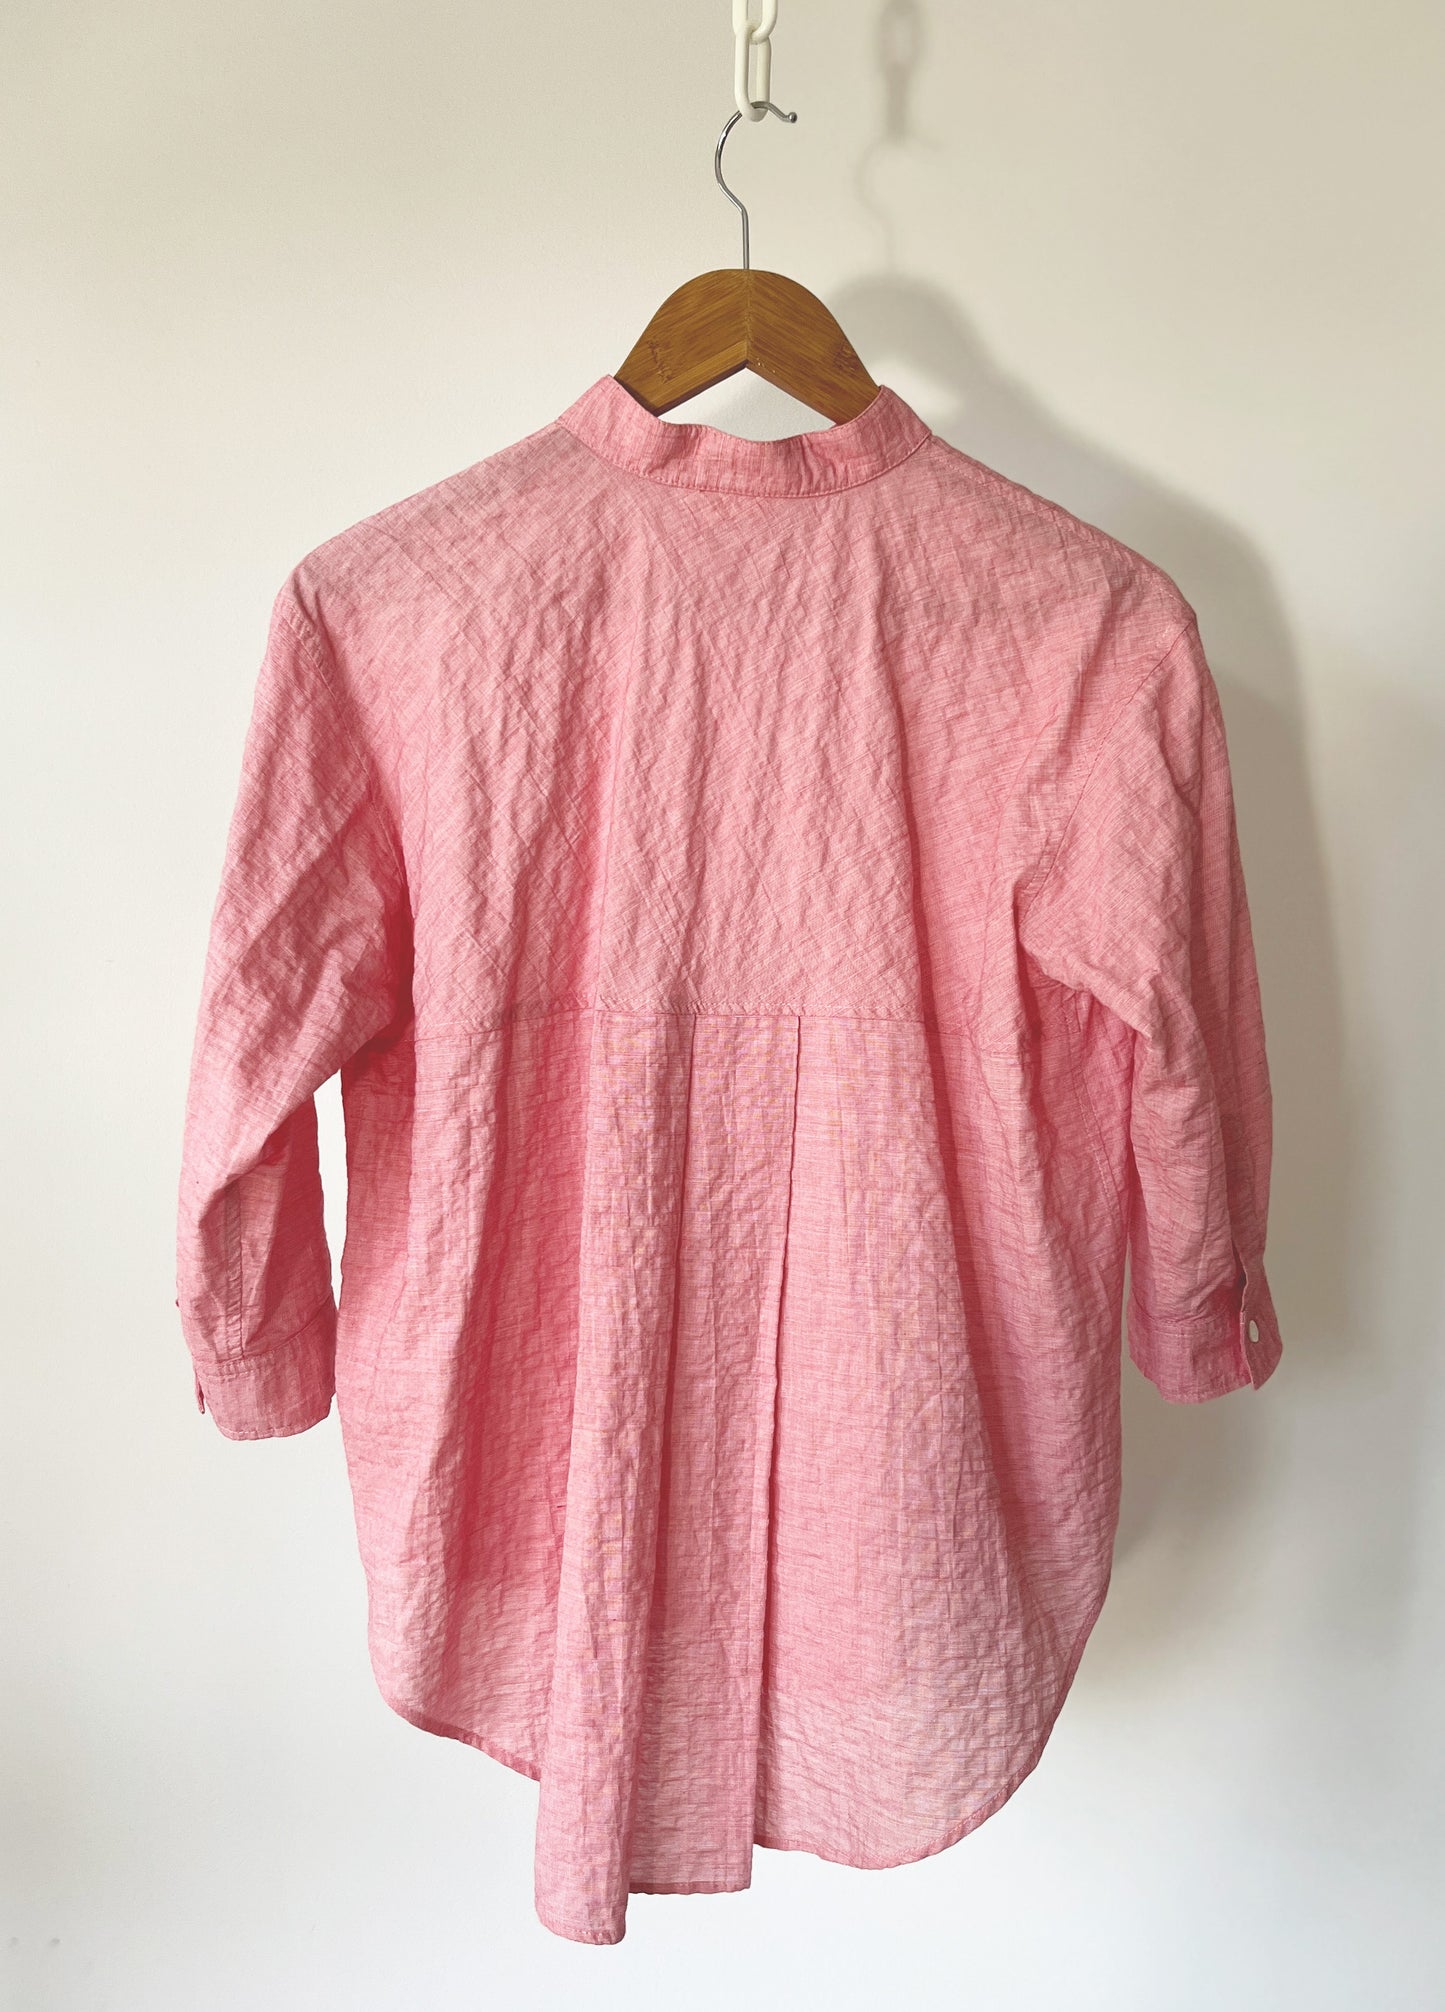 Stand-Collar Swing Shirt Pink Rose